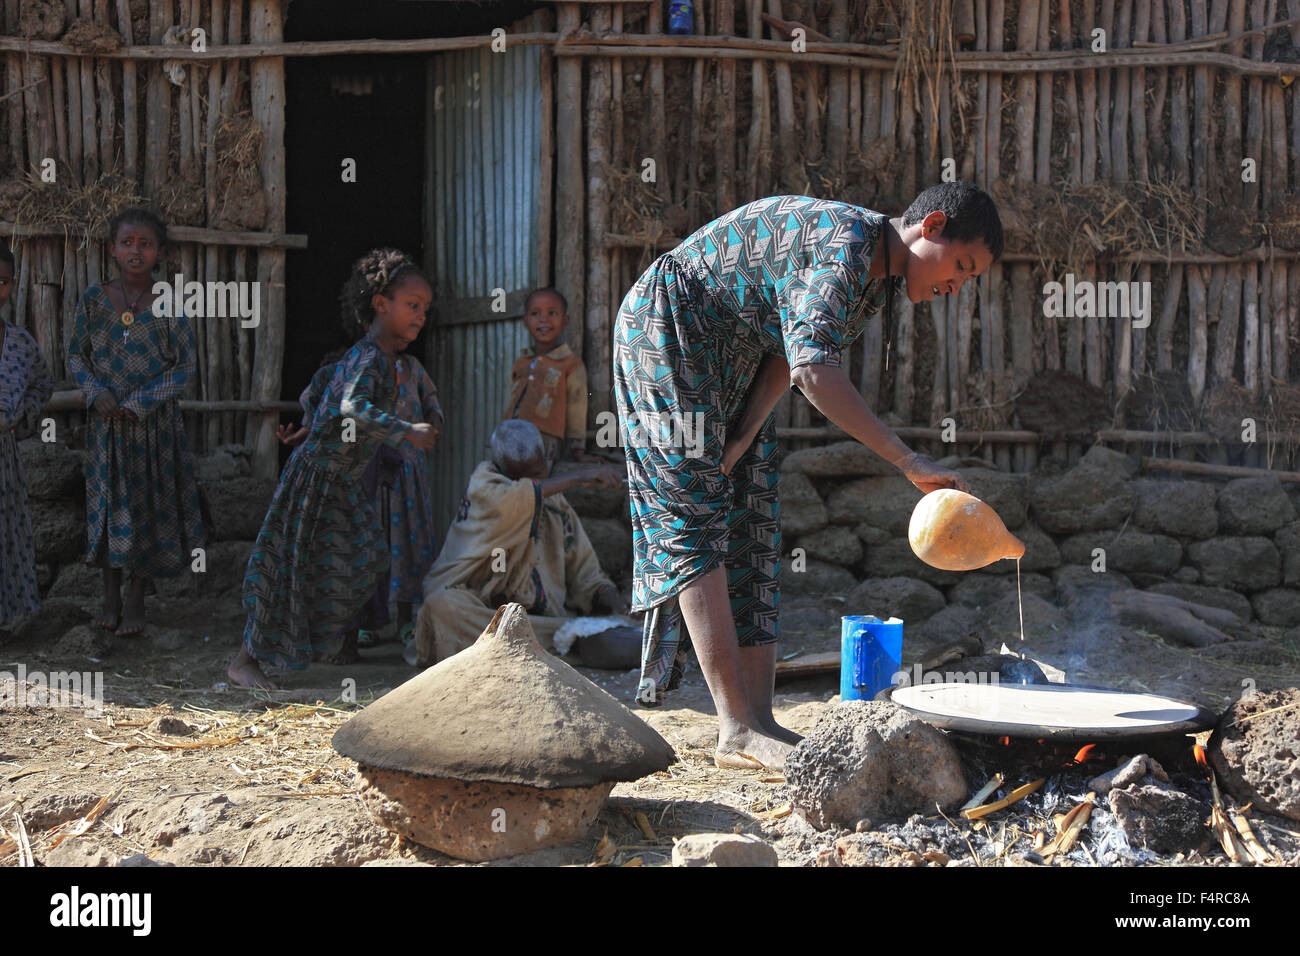 La région d'Amhara, famille simple, petite ferme, l'auto-restauration, la fabrication de pain appelé injera teff Banque D'Images